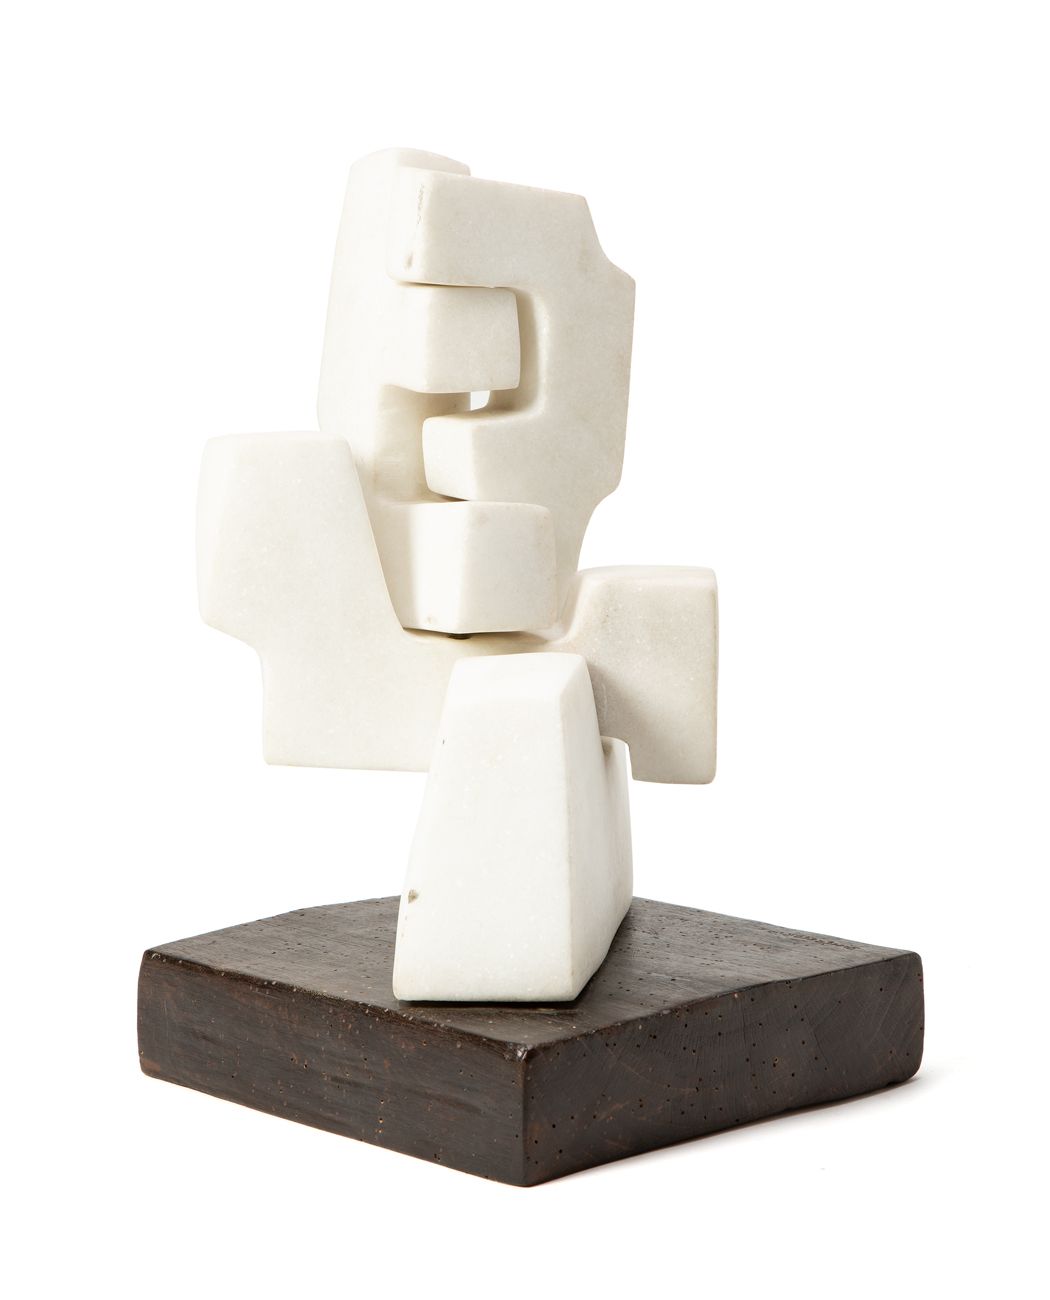 GIANCARLO SANGREGORIO (1925-2013) - Modulare, 1992 Skulptur aus Marmor und Holz
&hellip;